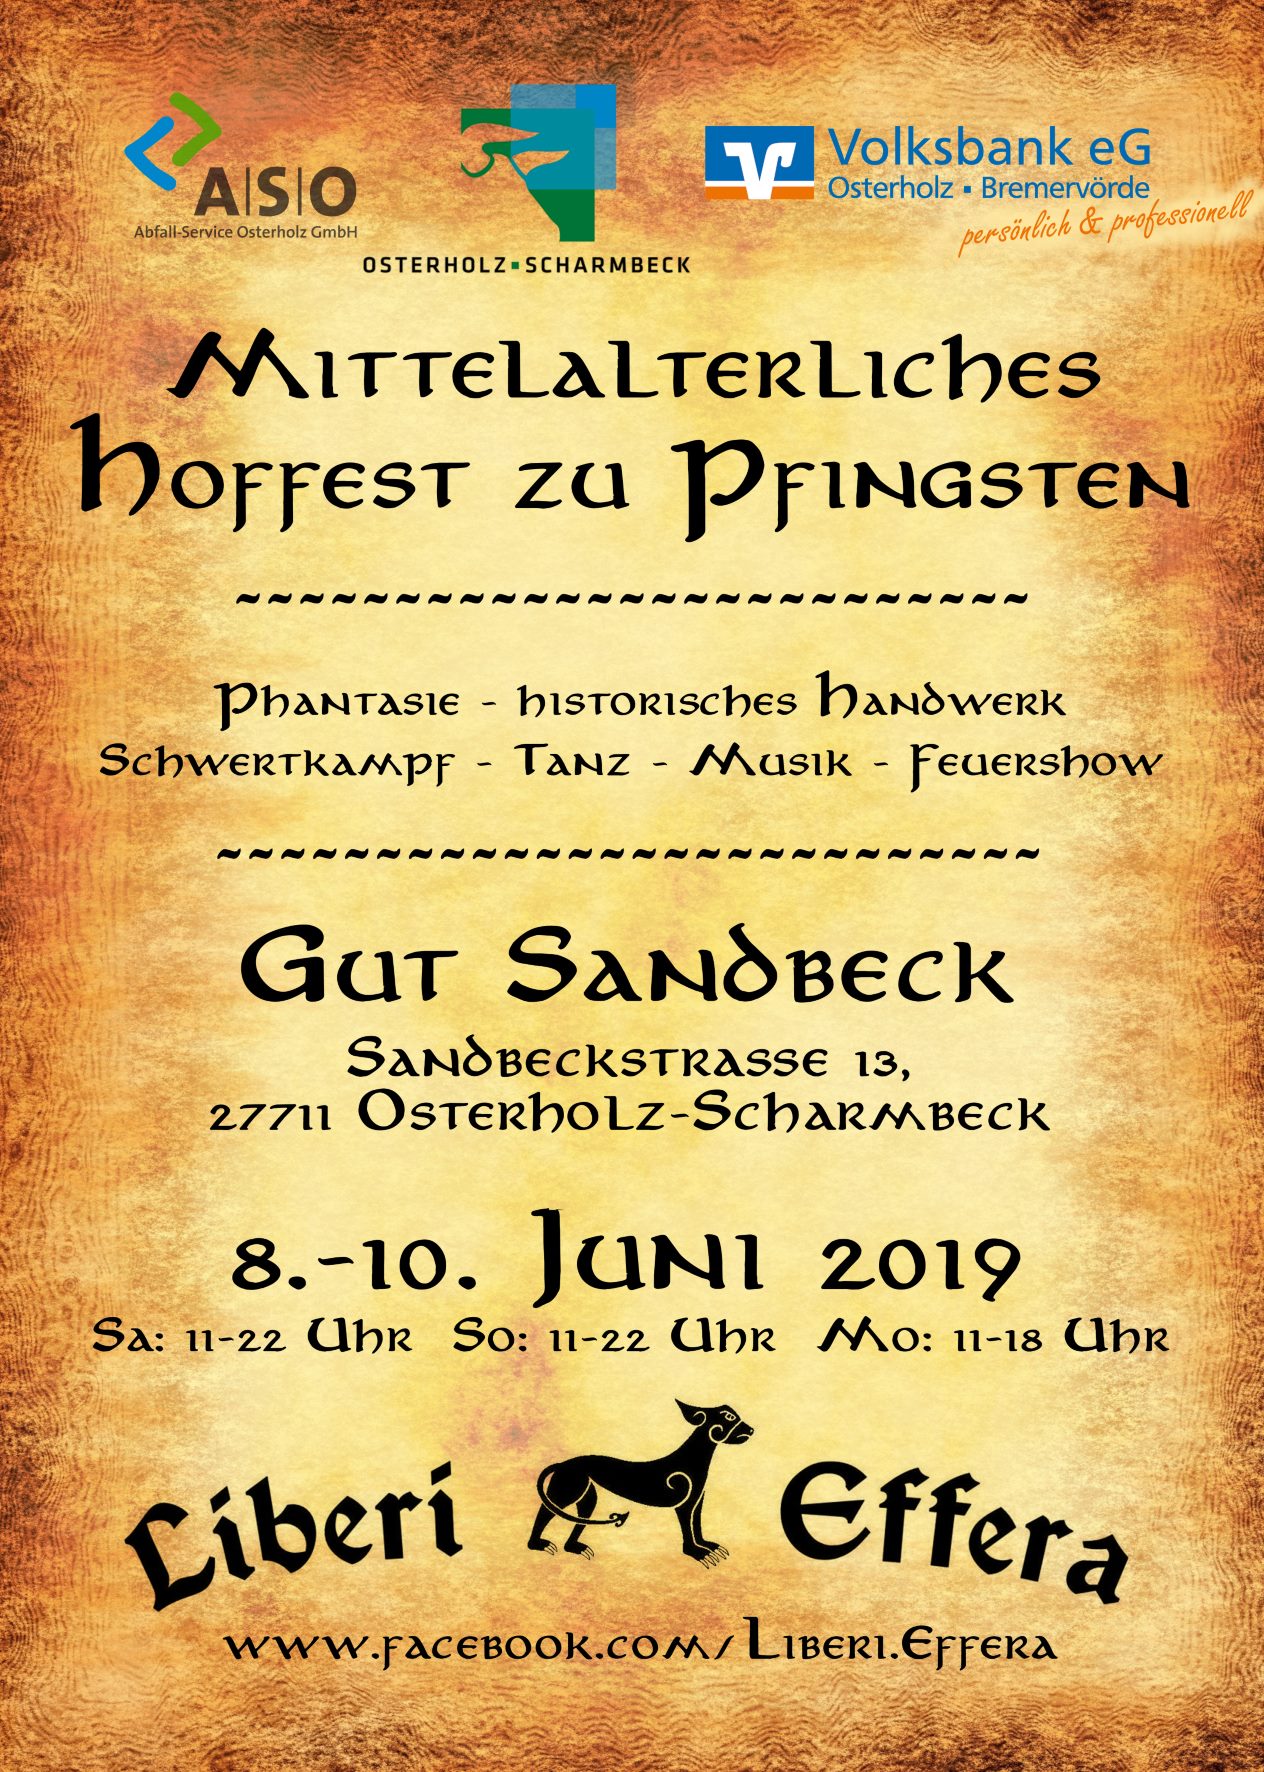 Hoffest zu Pfingsten 2019 auf Gut Sandbeck